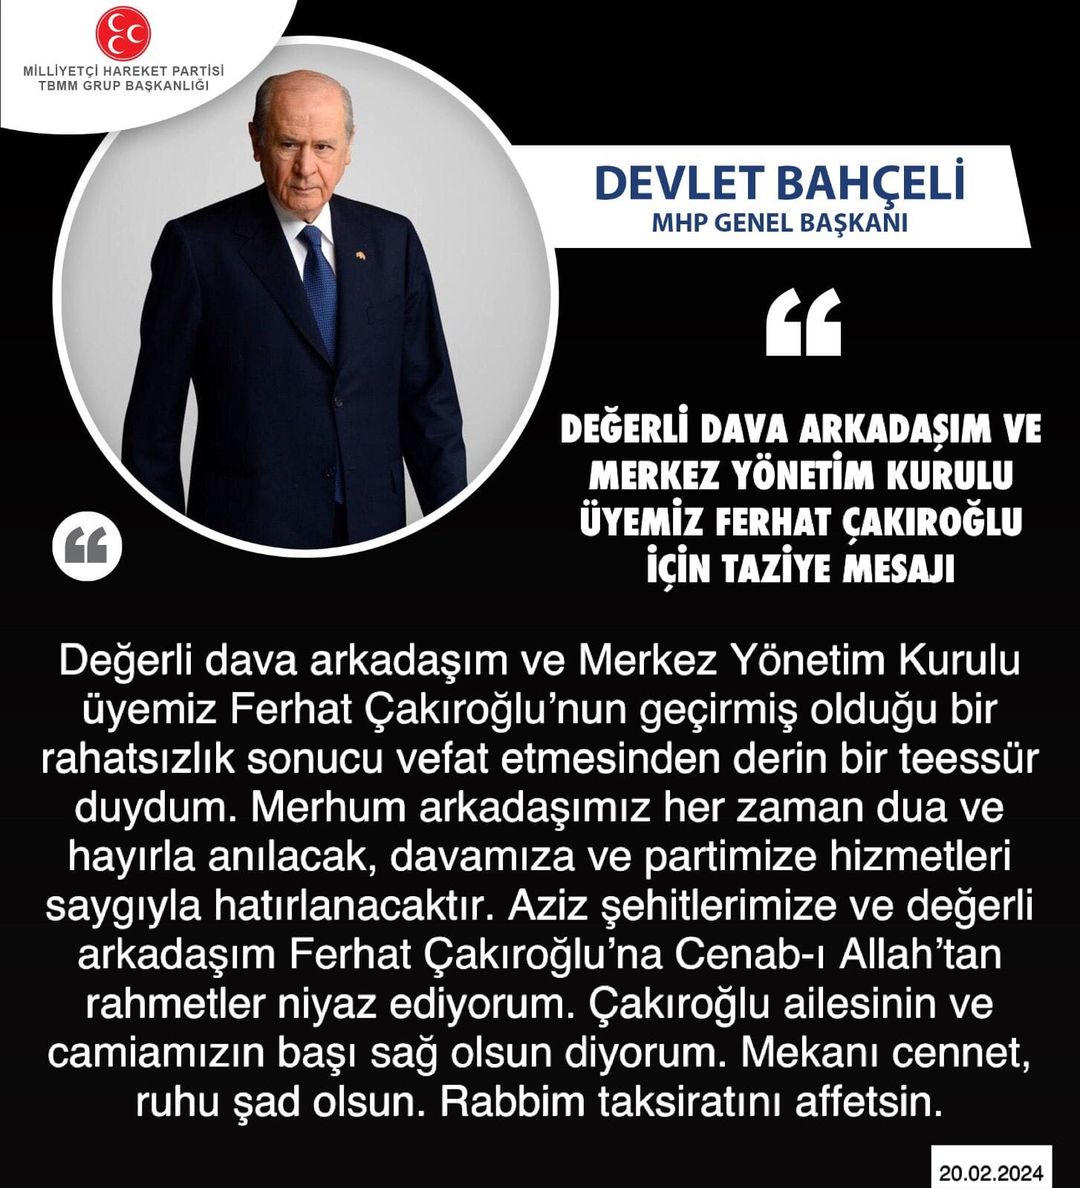 MHP Genel Başkanı Devlet Bahçeli'den Taziye Mesajı: 